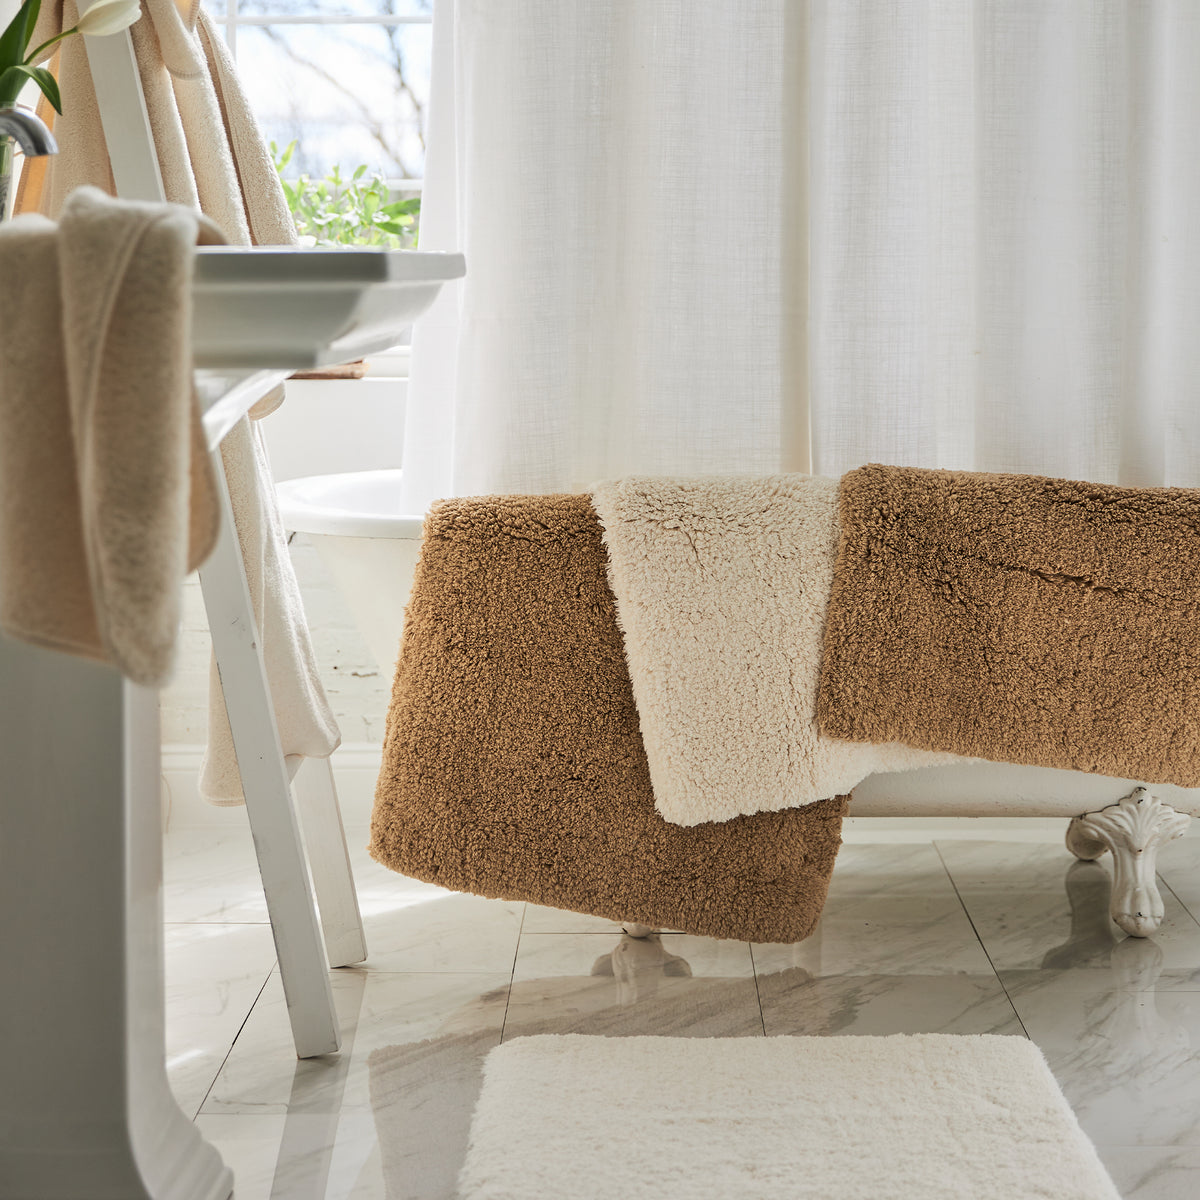 Indulgence Bath Towels by Scandia Home